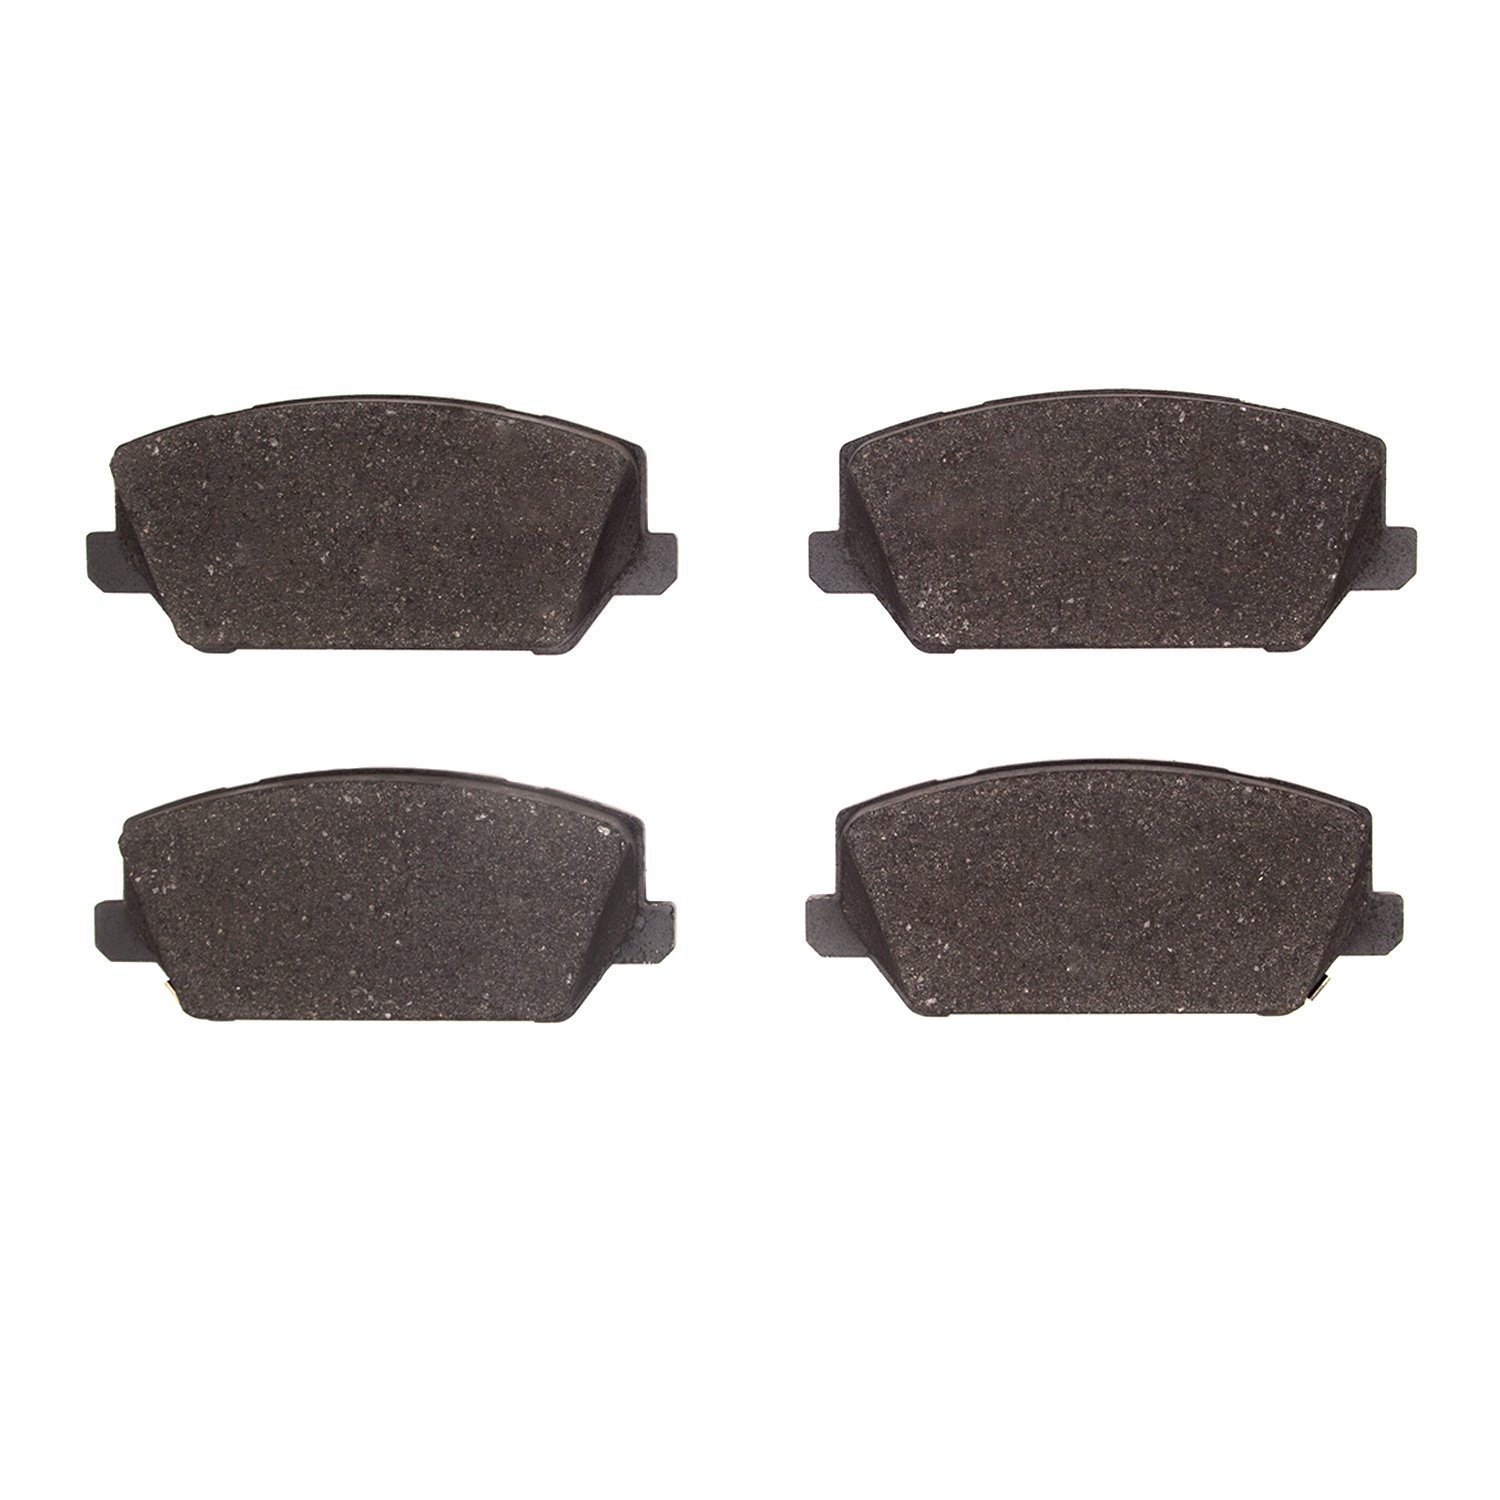 Optimum OE Brake Pads, Fits Select Kia/Hyundai/Genesis, Position: Front